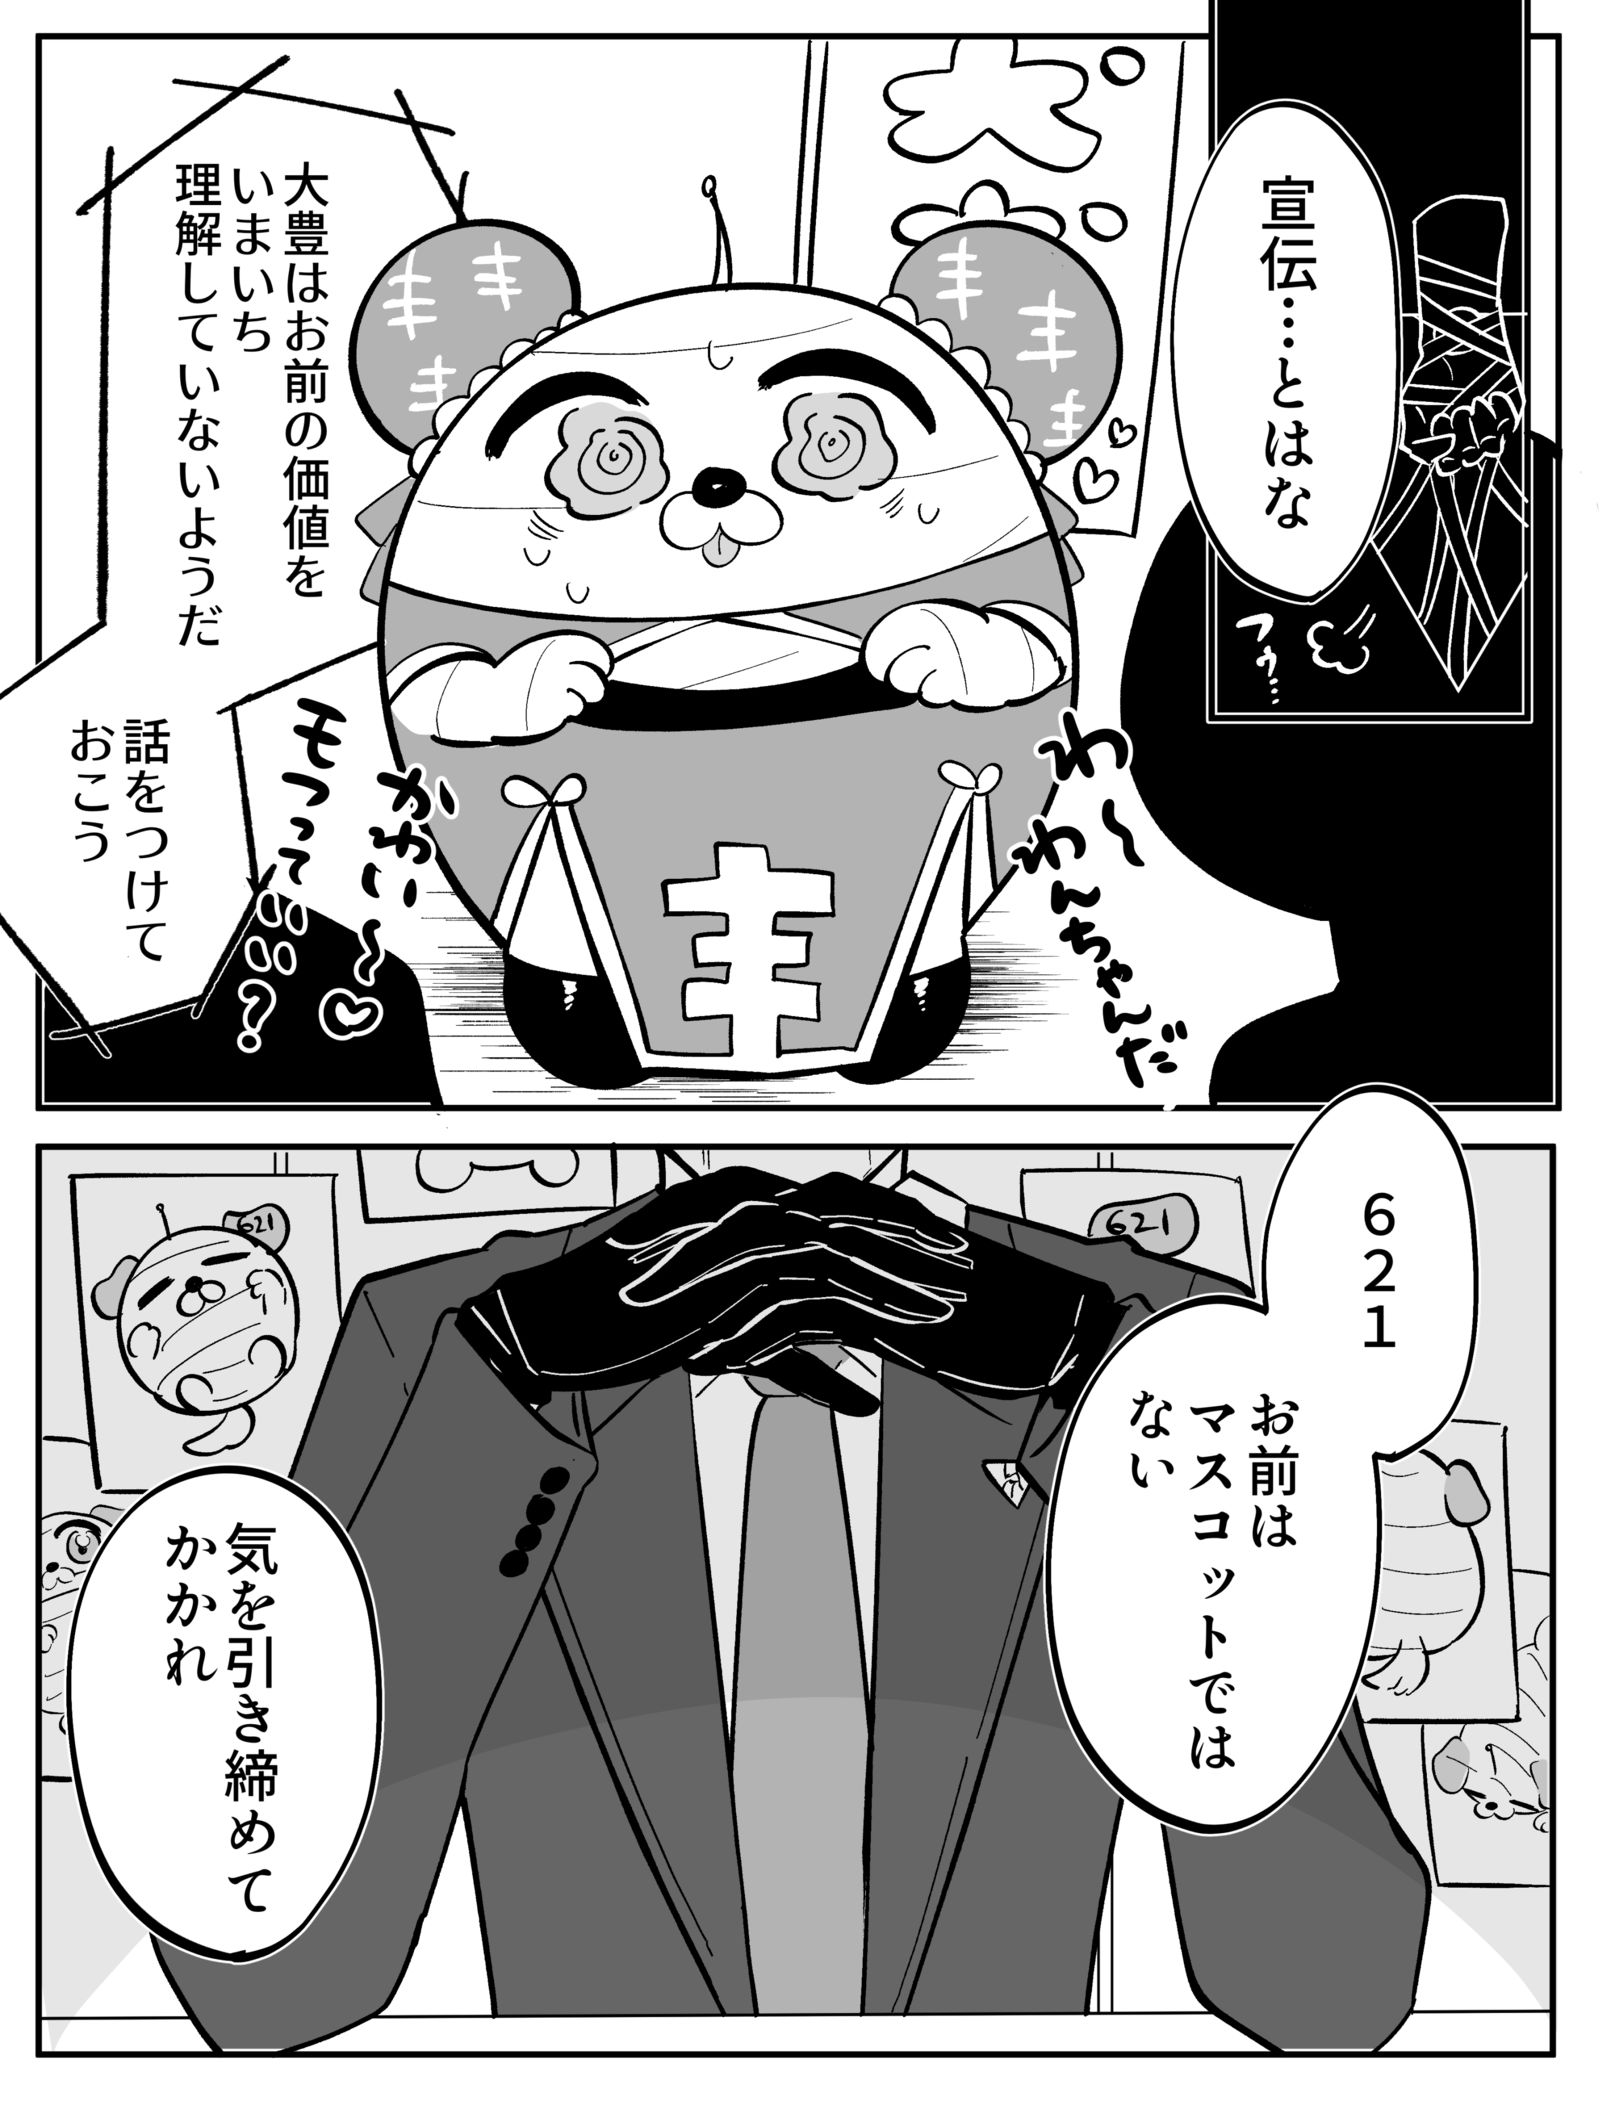 漫画总结2-アーマードコアC4-621